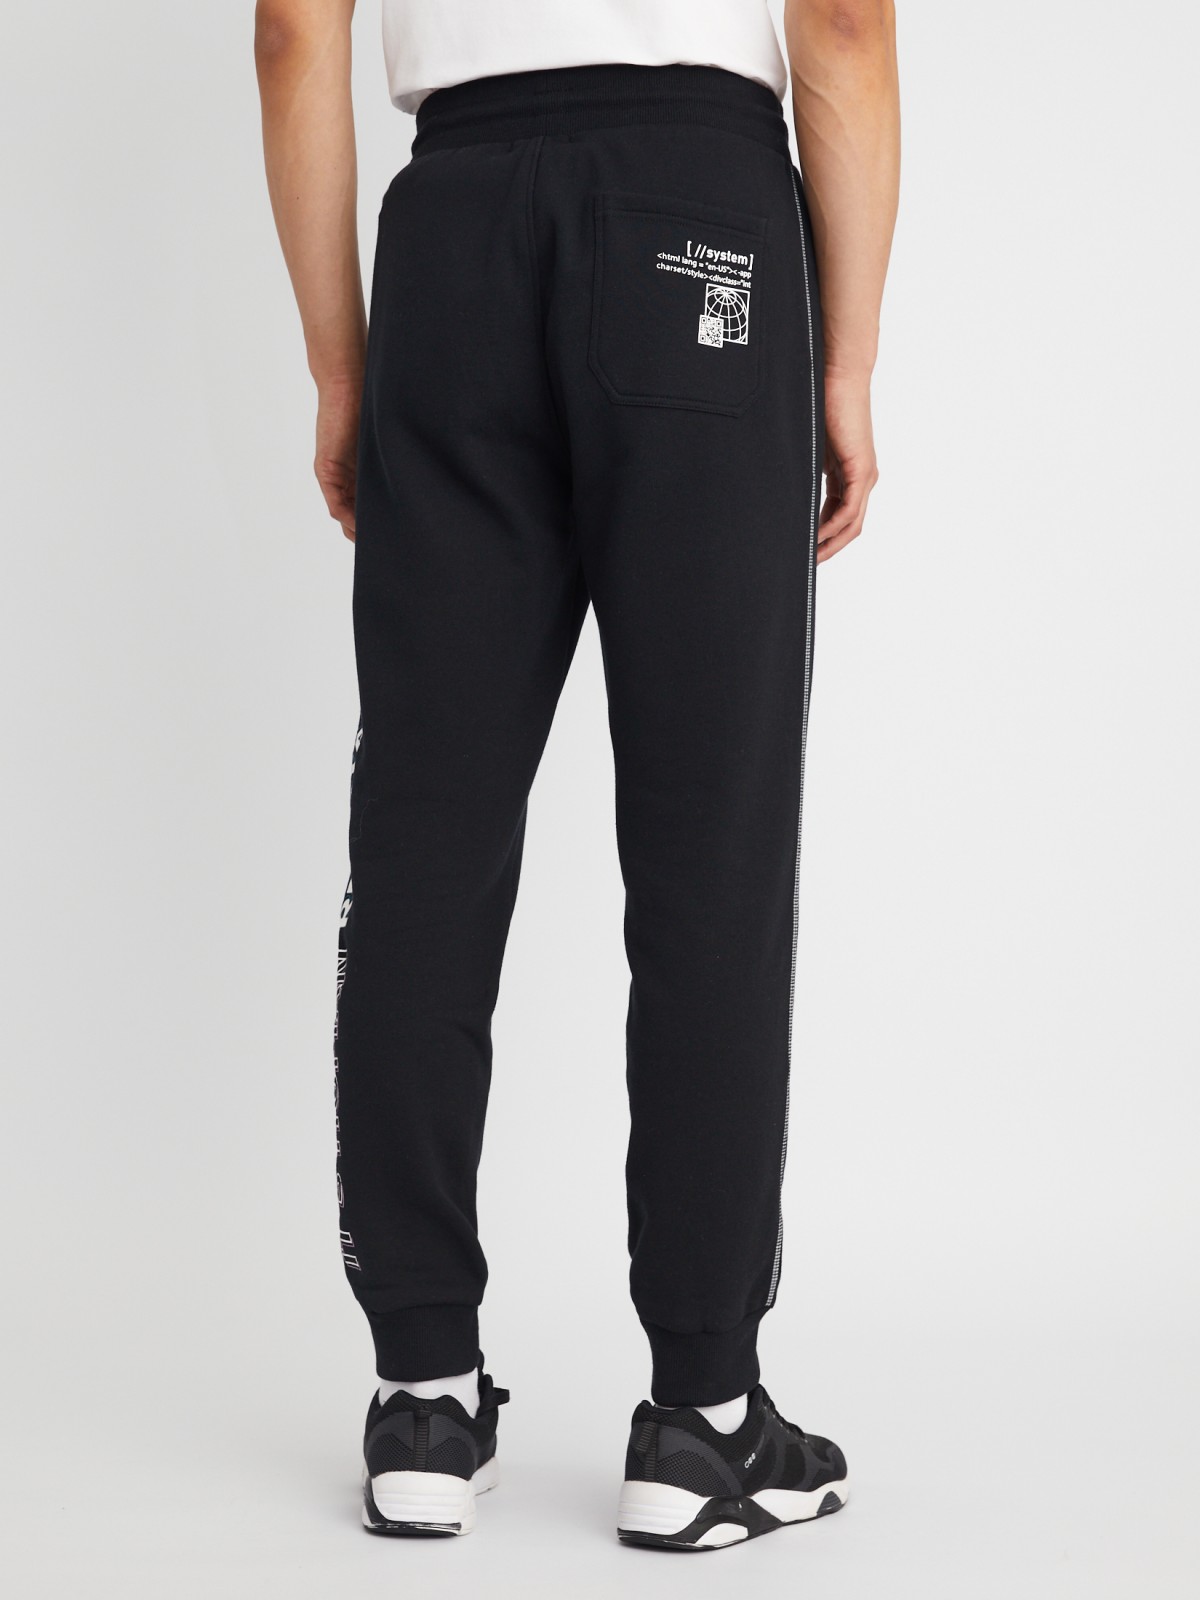 Утеплённые трикотажные брюки-джоггеры в спортивном стиле с принтом zolla 213337679051, цвет черный, размер S - фото 5